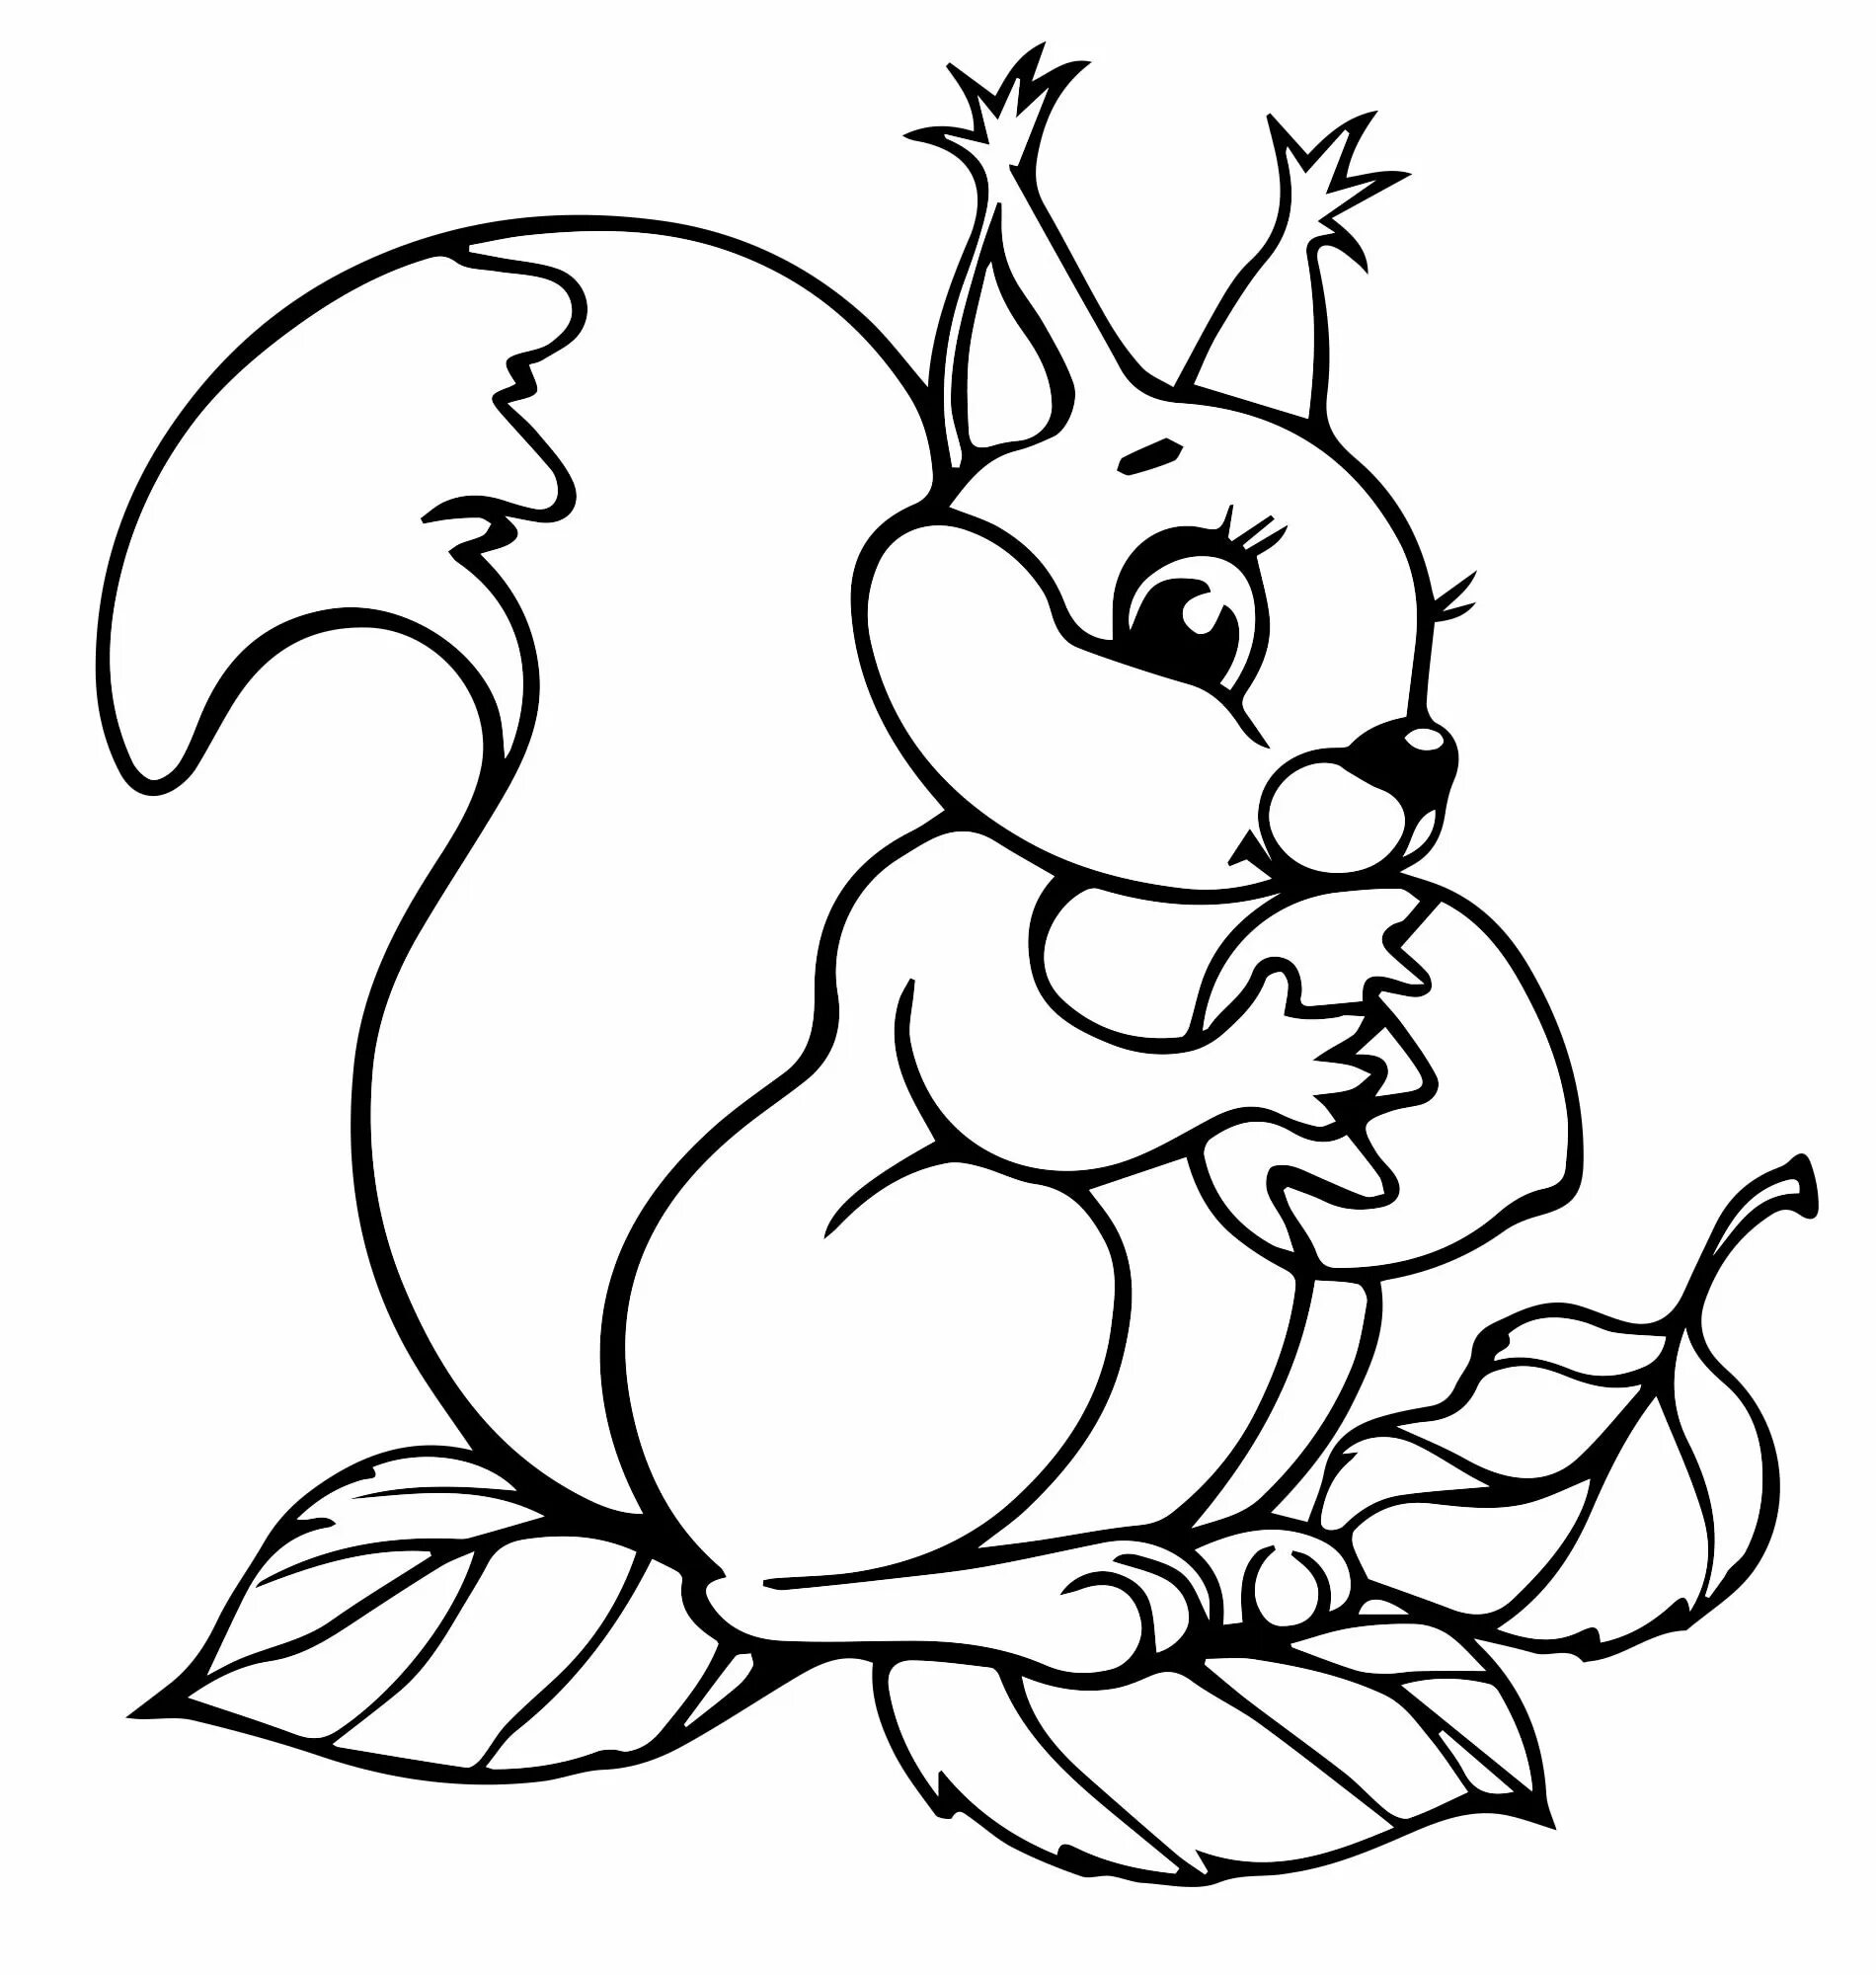 Inviting squirrel coloring book